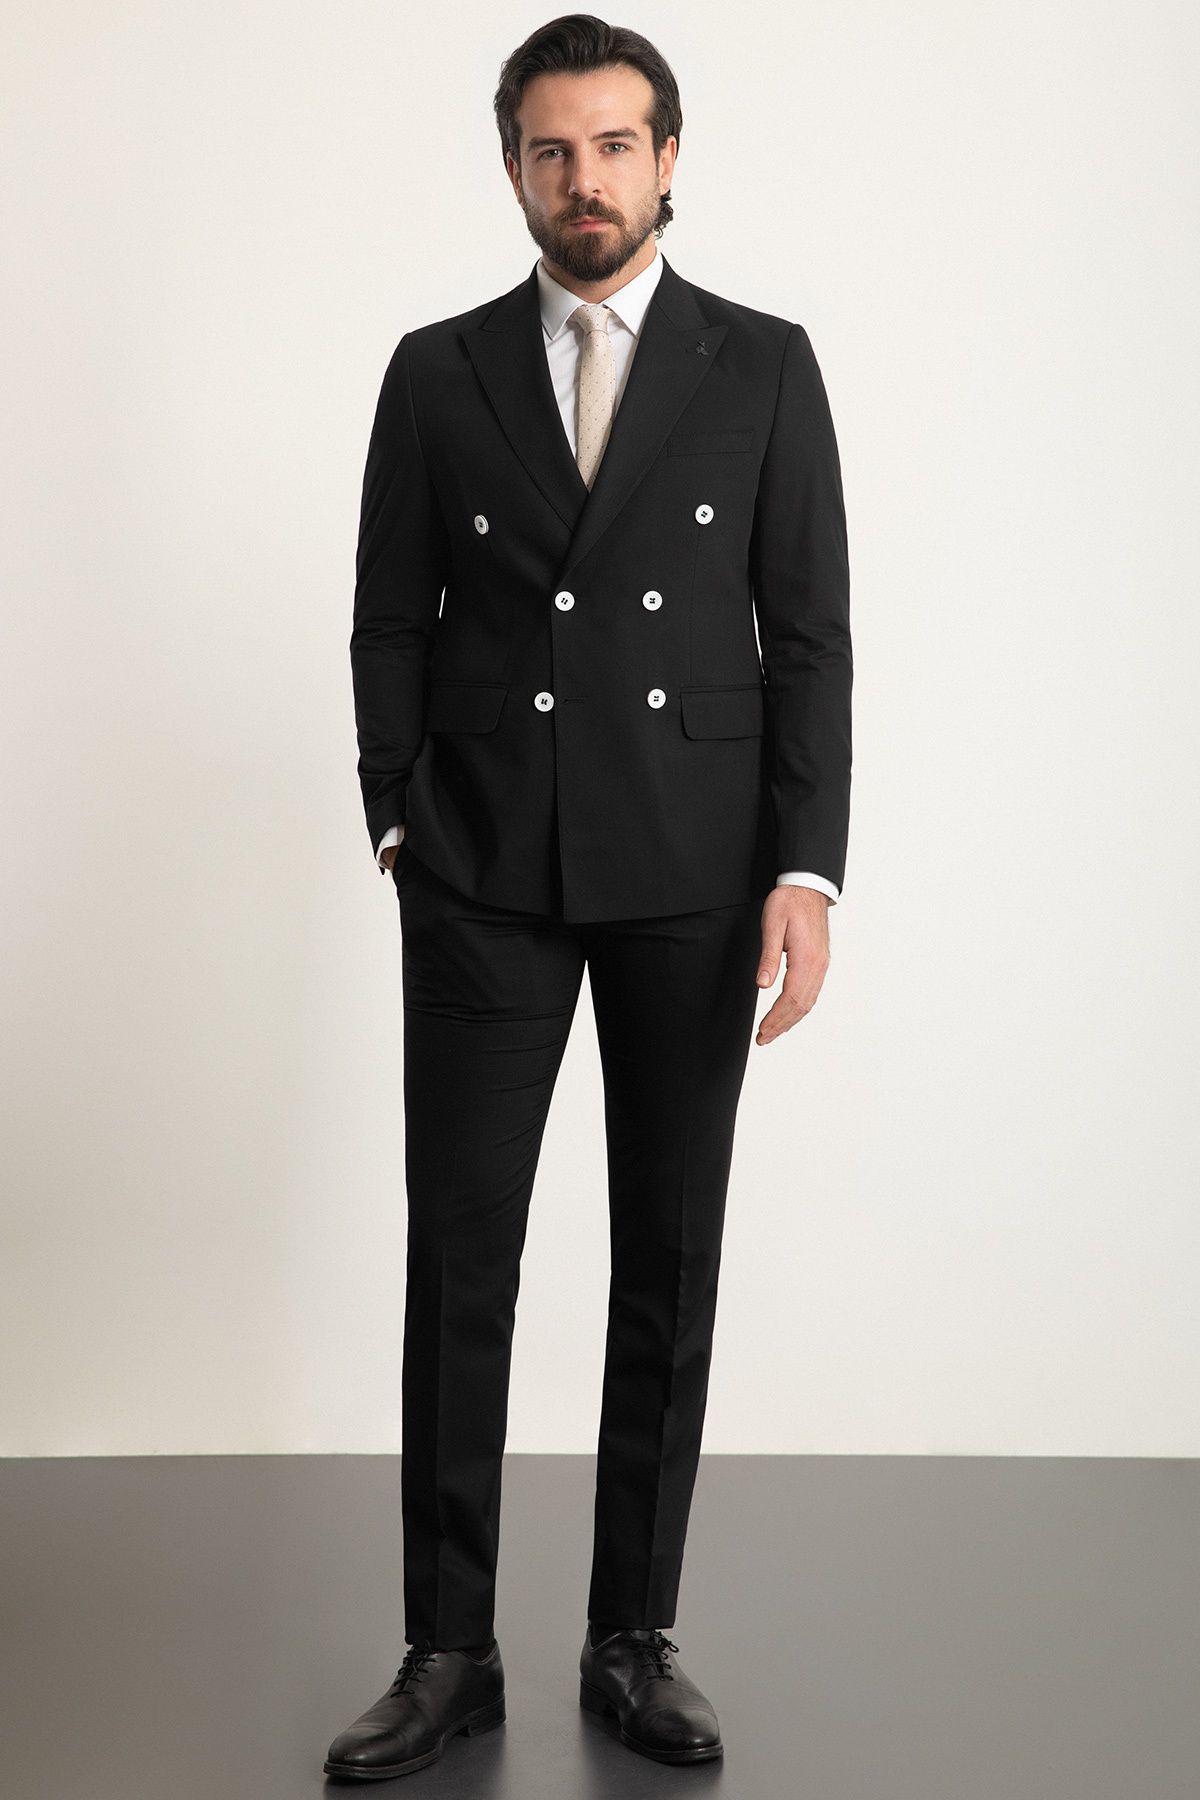 Mcr Düz Siyah Renk Slim Fit Geniş Yaka Kruvaze Erkek Takım Elbise